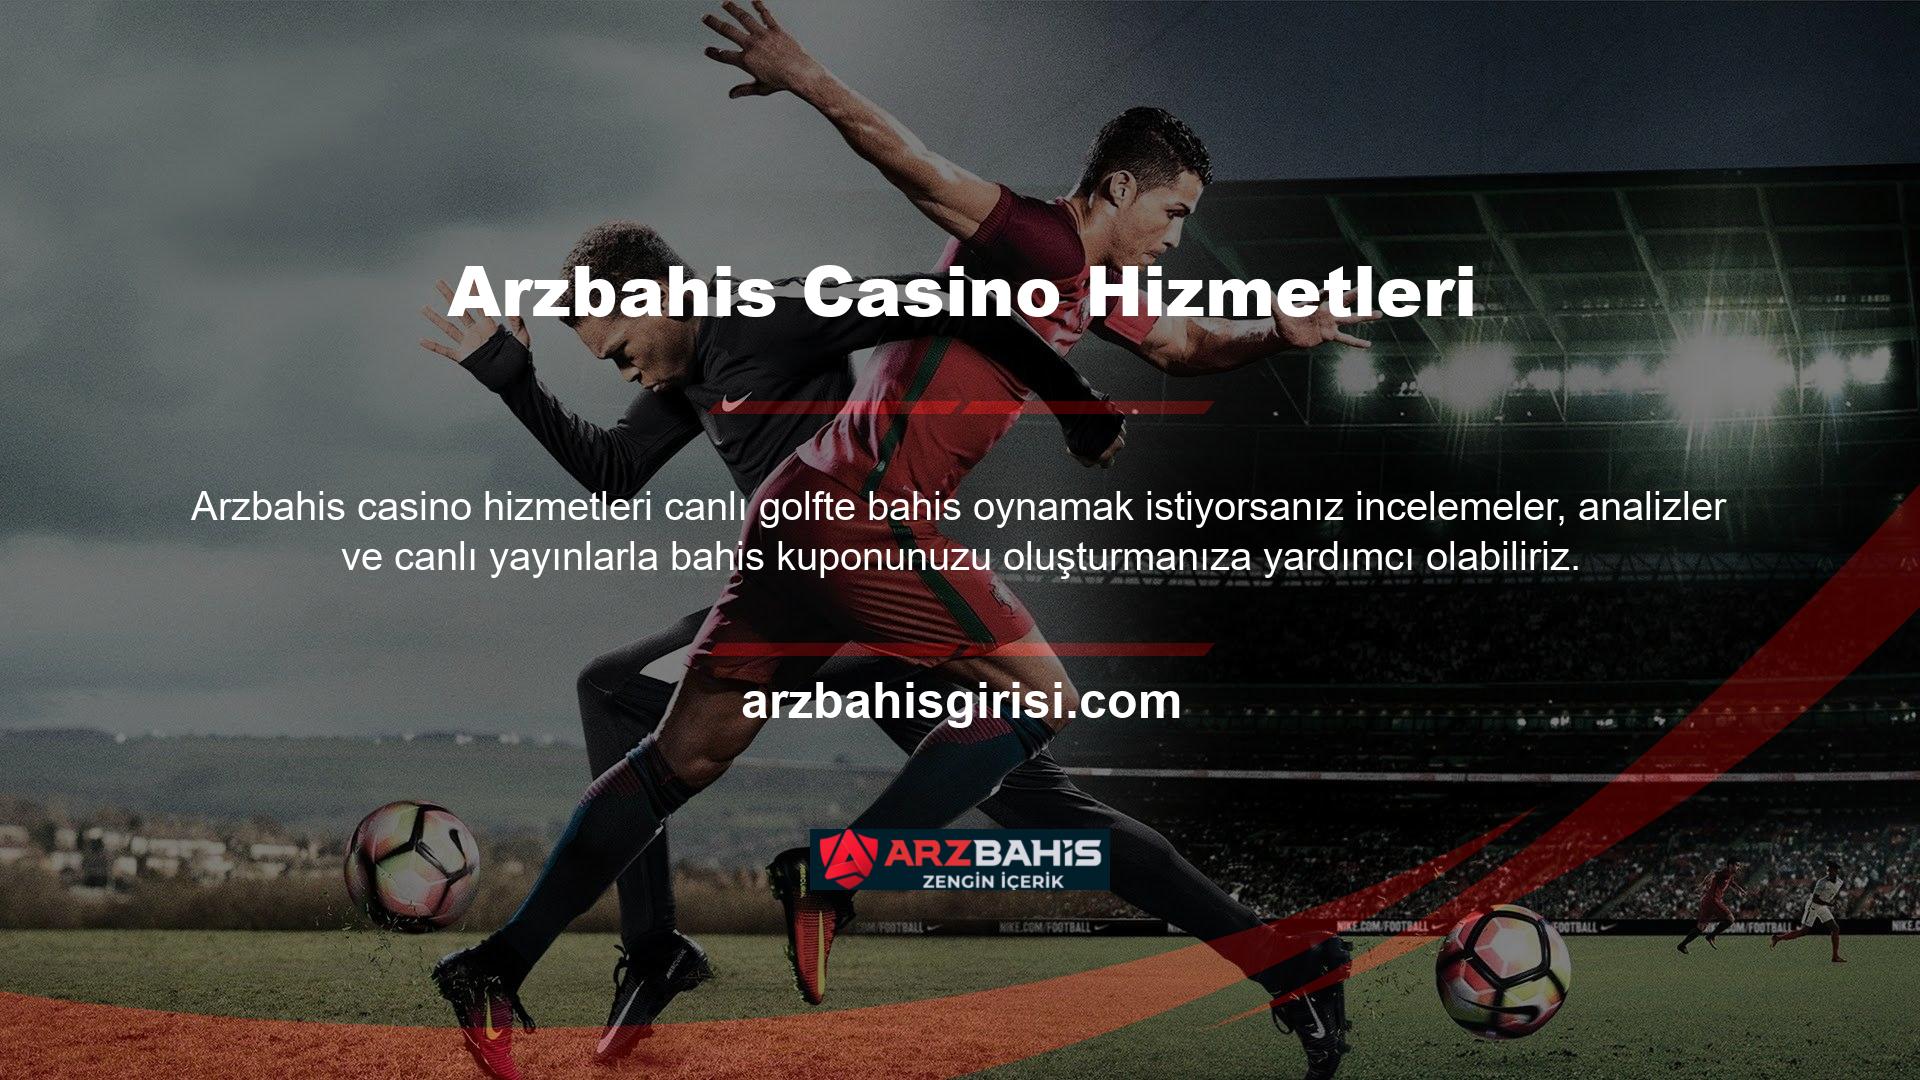 Arzbahis Casino Hizmetlerinin TV seçeneği ile dünyanın dört bir yanından tüm spor karşılaşmalarını ücretsiz izlemeye hazır olun